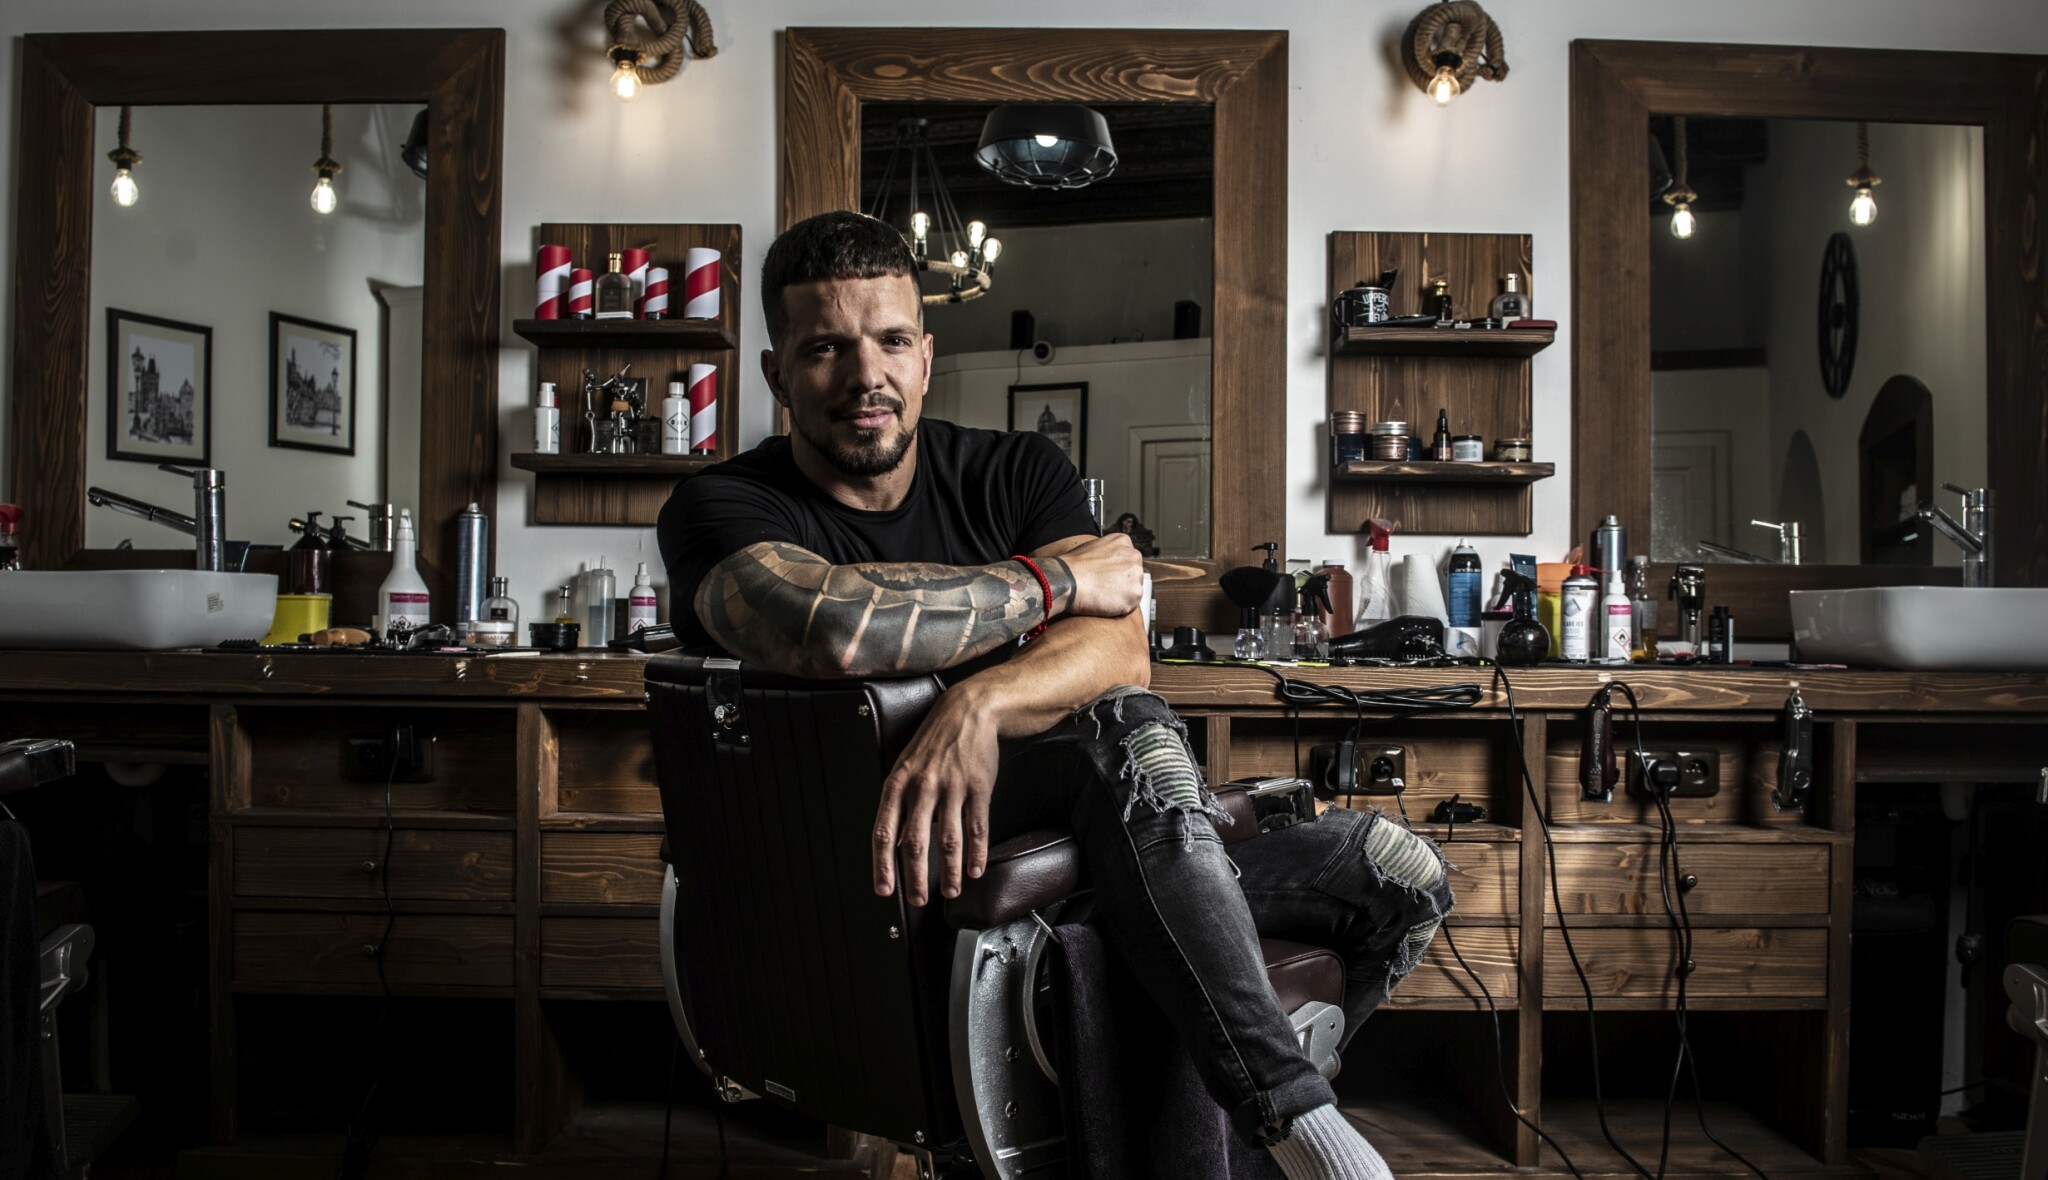 Spousta chlapů nemá doma ani pořádný hřeben, říká barber, kterého krize postavila na vlastní nohy